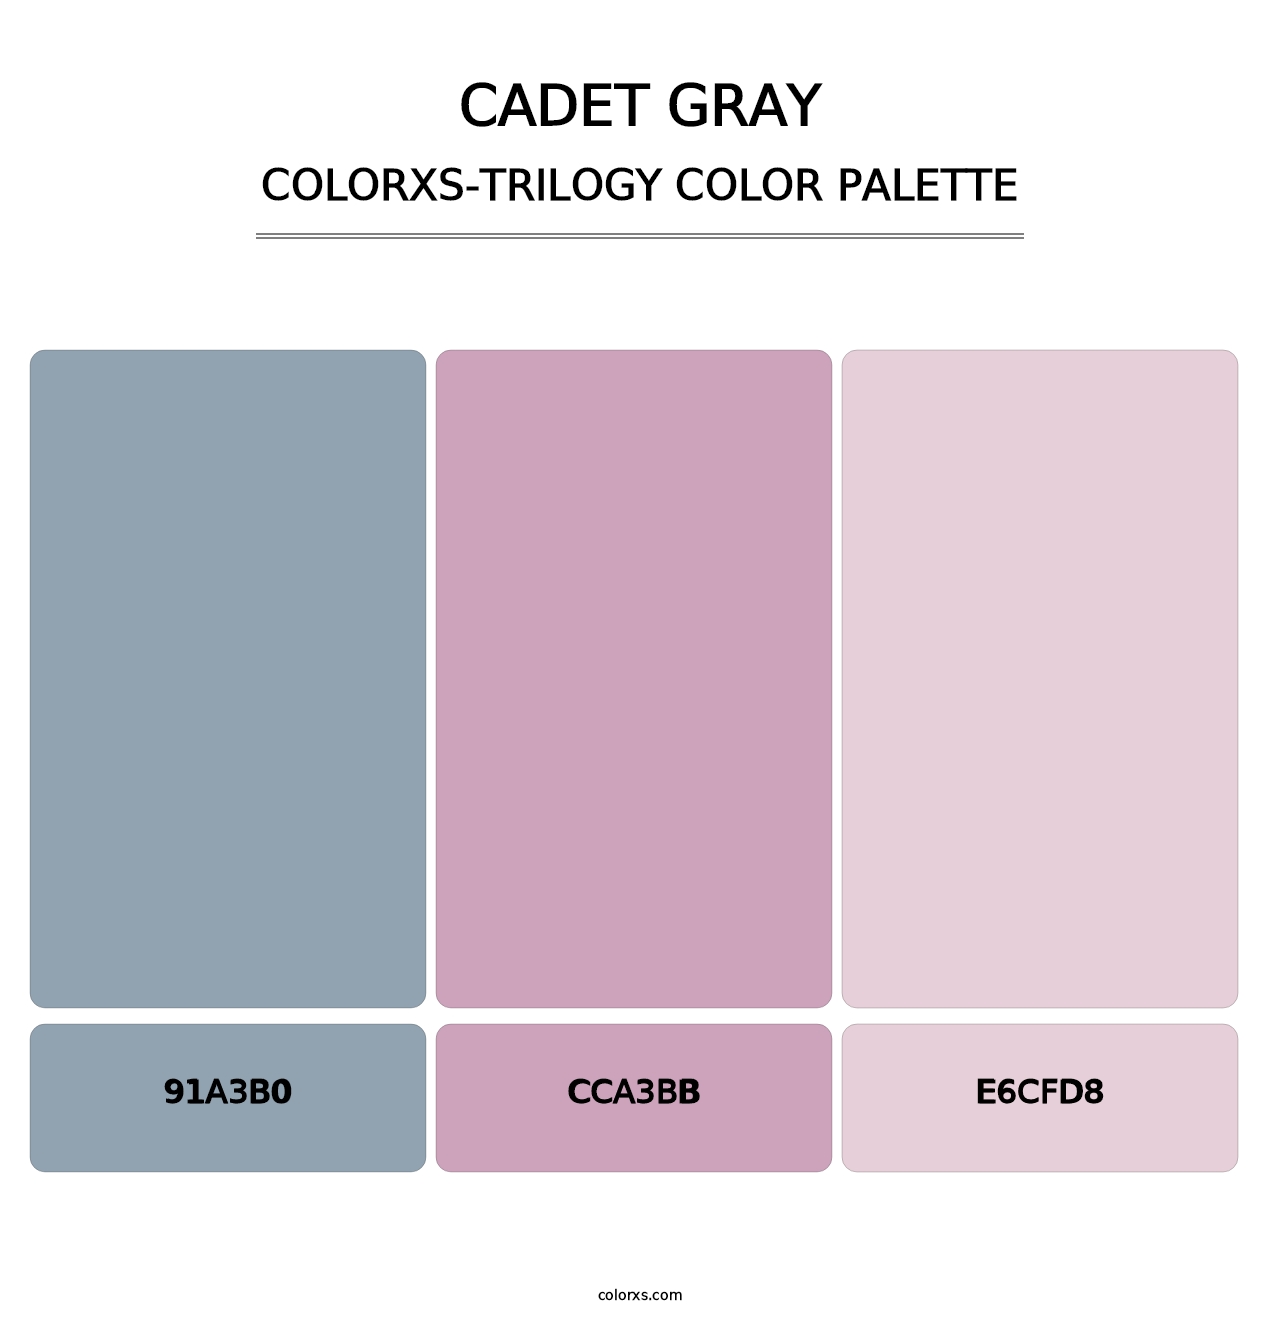 Cadet Gray - Colorxs Trilogy Palette